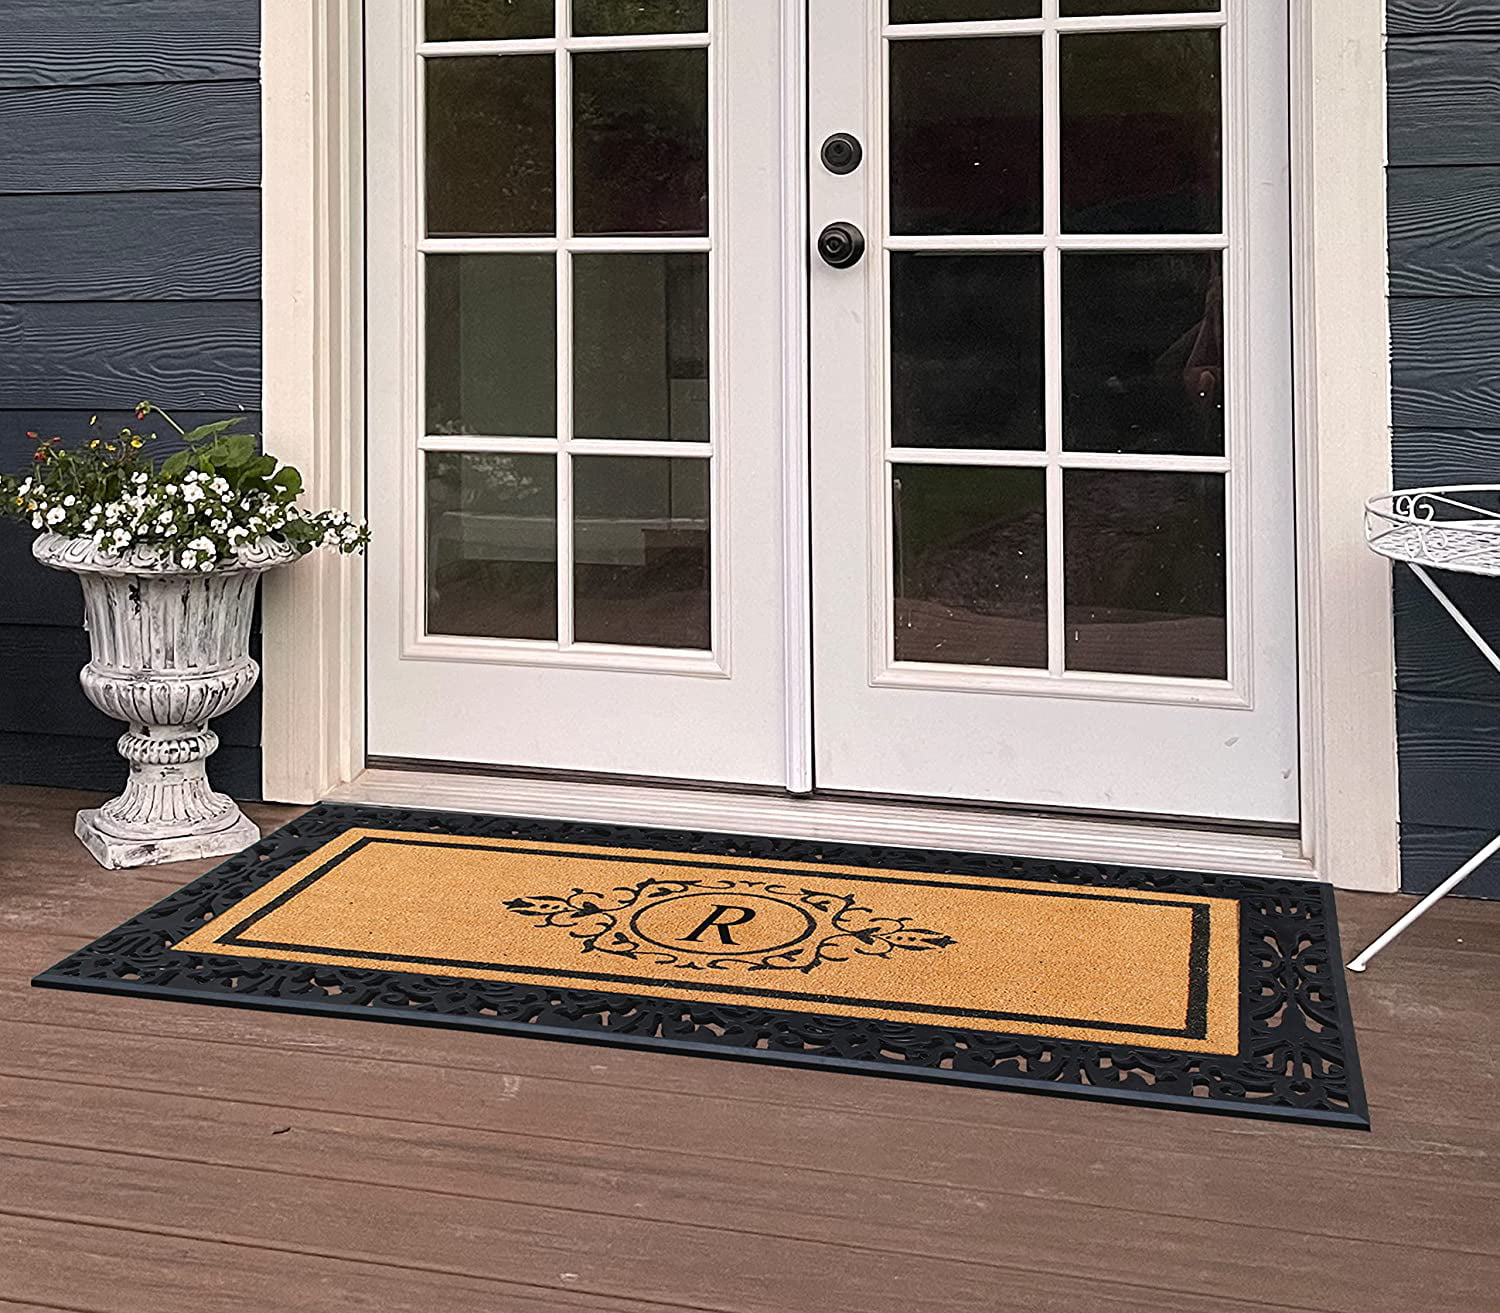 A1hc 100% Pure Rubber Monogrammed Front Door Mat 24 x39 Doormat, Indoor/ Outdoor Use - J